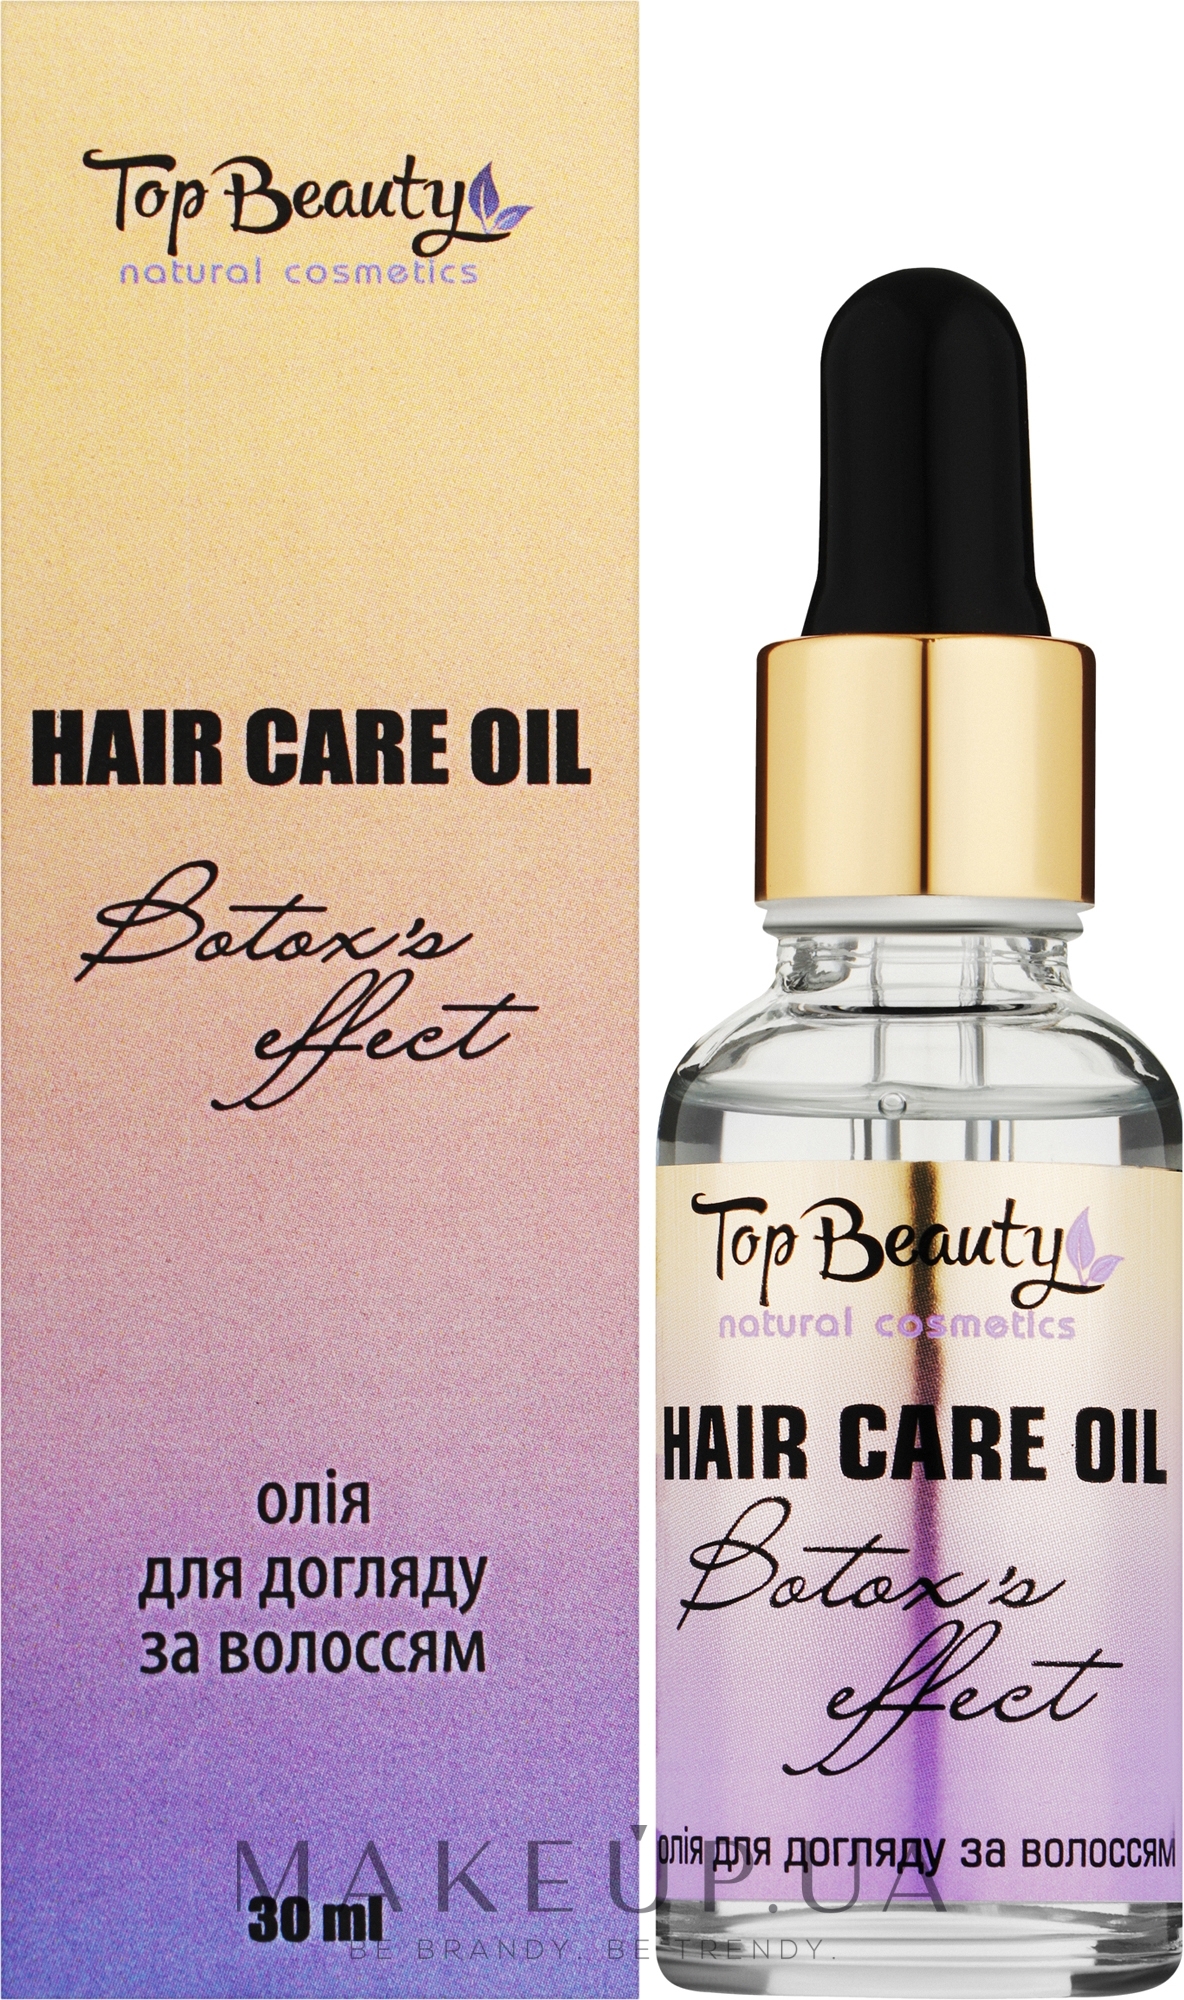 Олія для догляду за волоссям "Botox's effect" - Top Beauty Hair Oil — фото 30ml